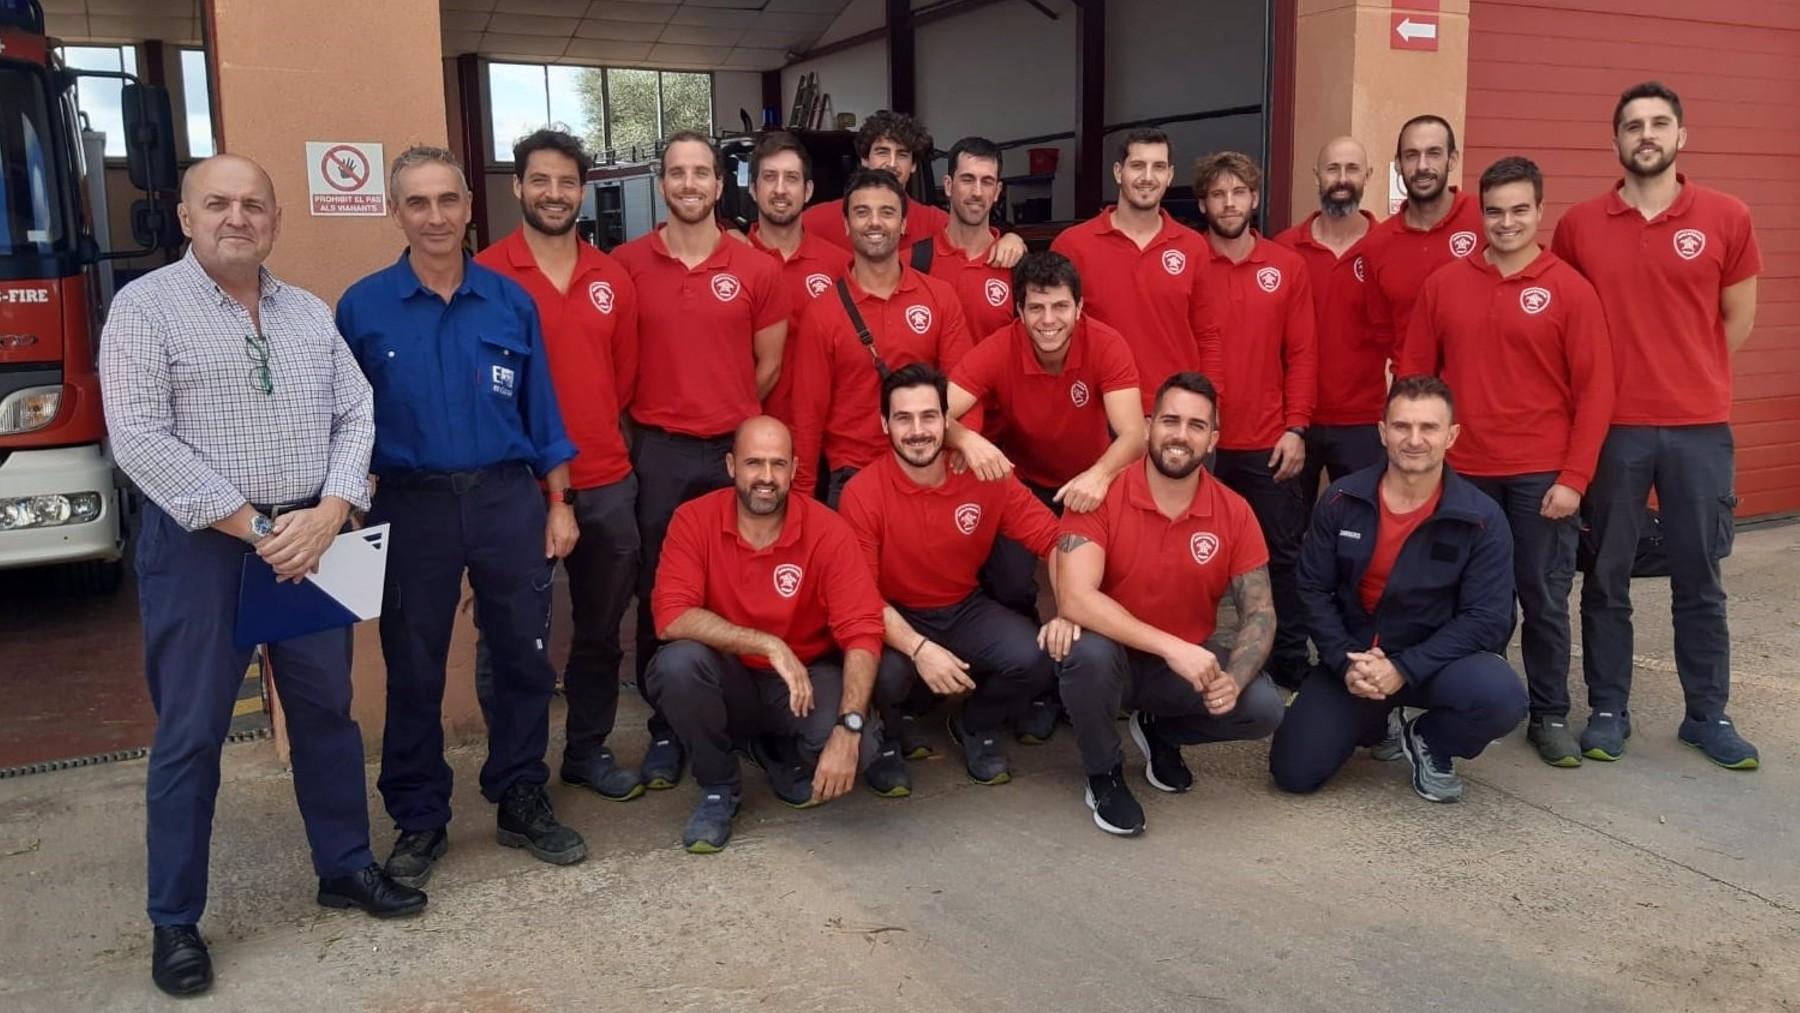 Algunos de los 31 miembros de Bomberos de Mallorca, que recibirán las formaciones por parte de Endesa.